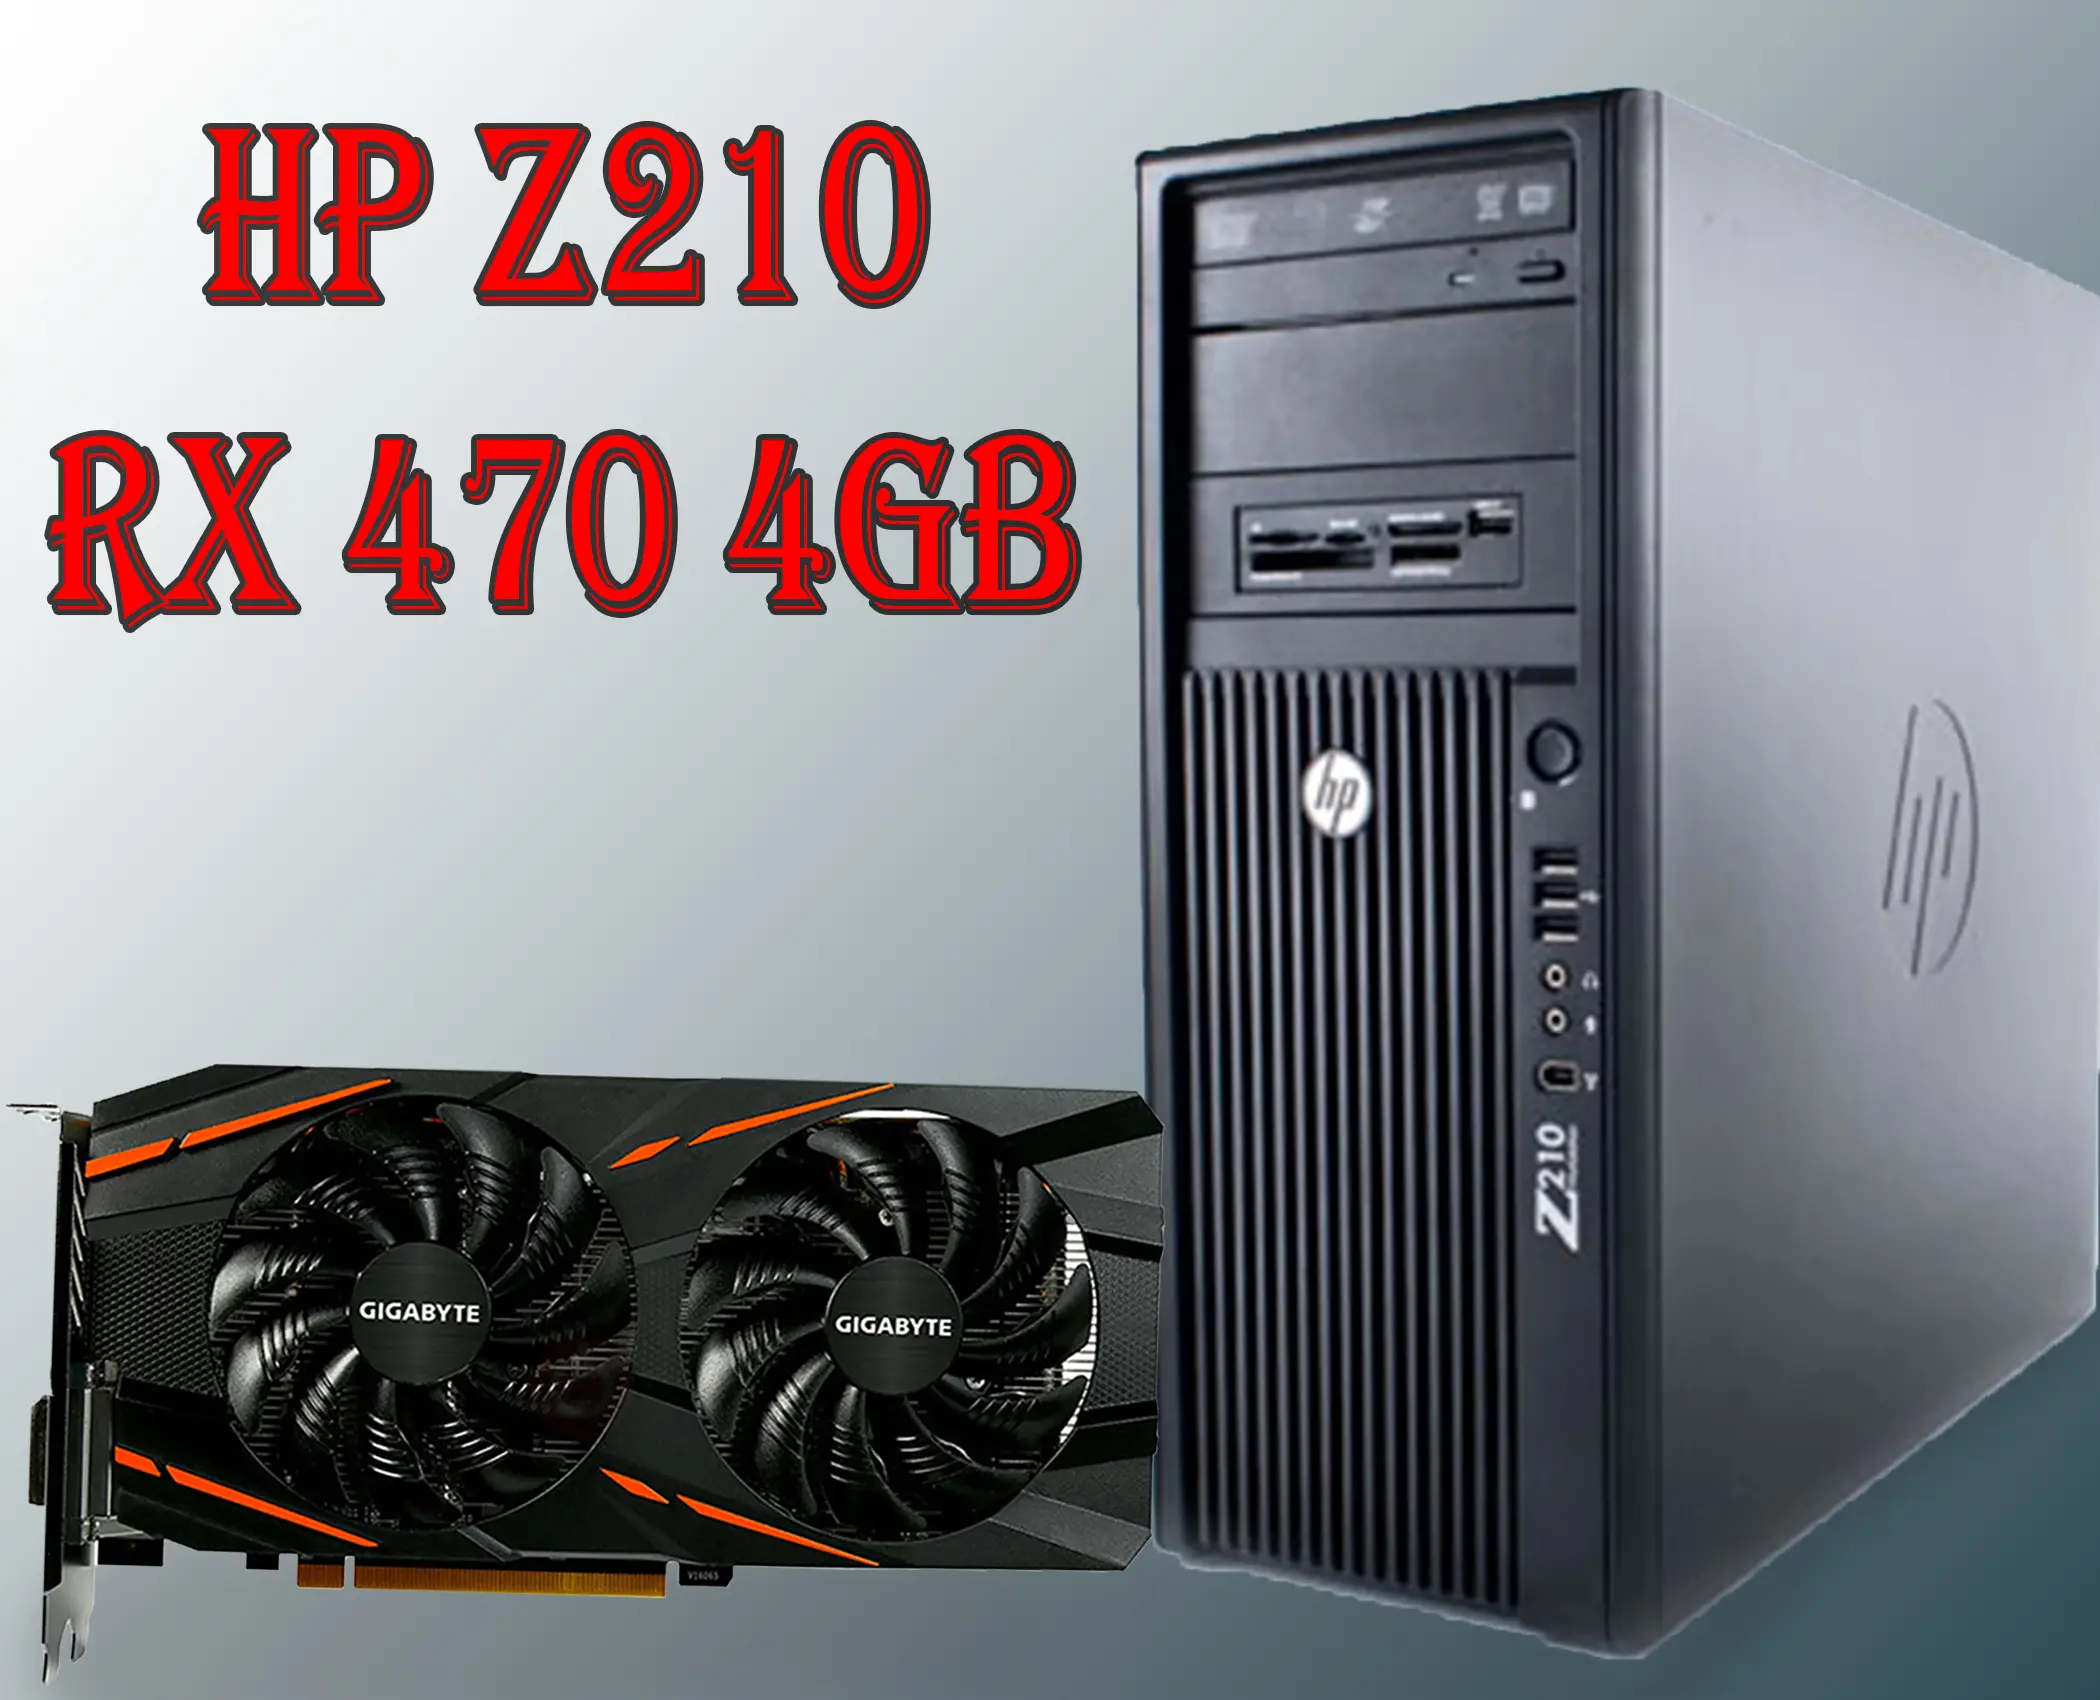 أقوى كيسة للألعاب و البرامج HP Z210 مع كارت AMD RX 470 من GigaByte